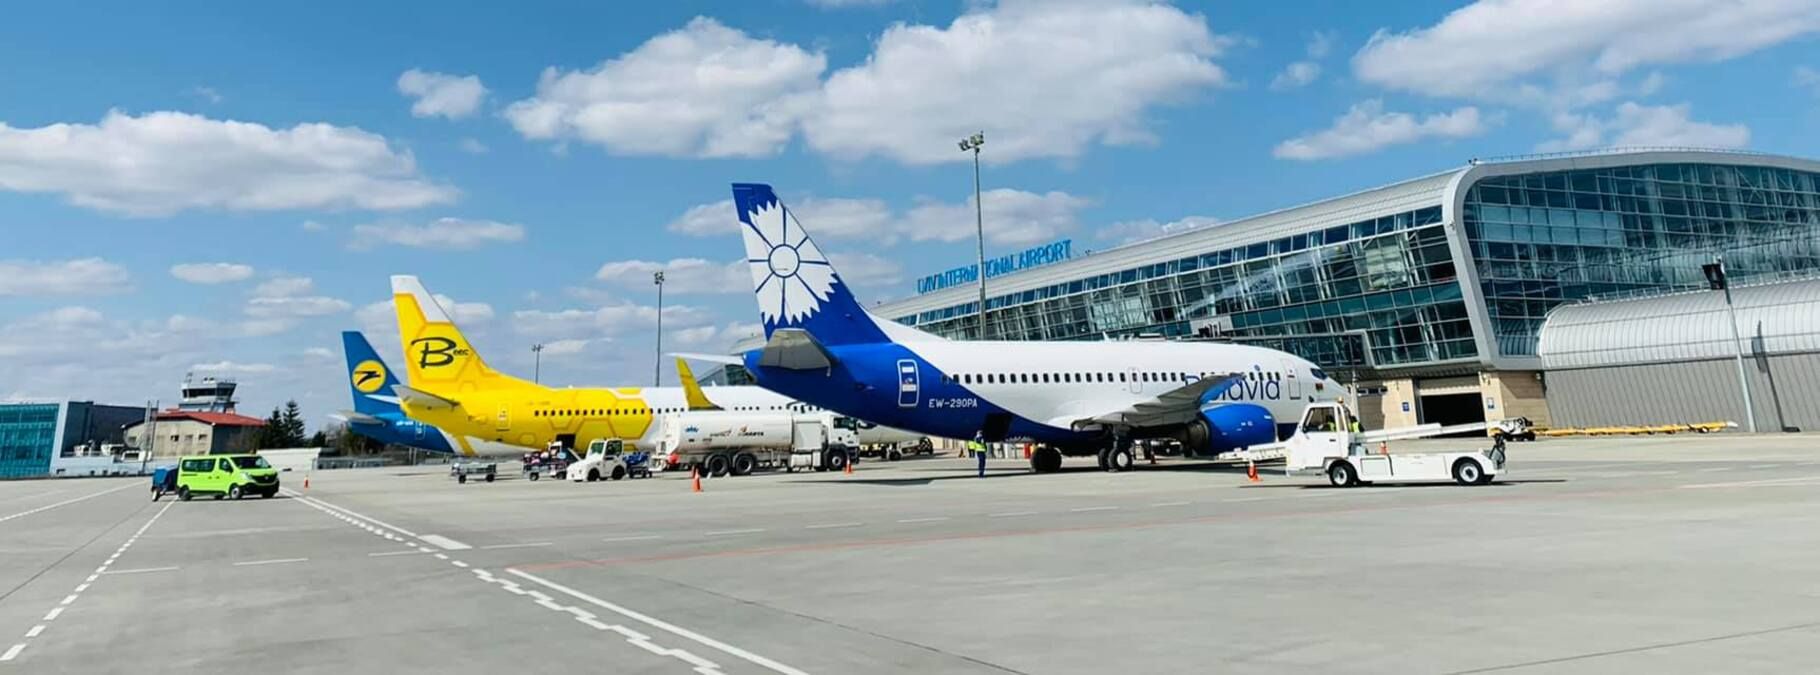 Як до карантину: львівський аеропорт похвалився пасажиропотоком